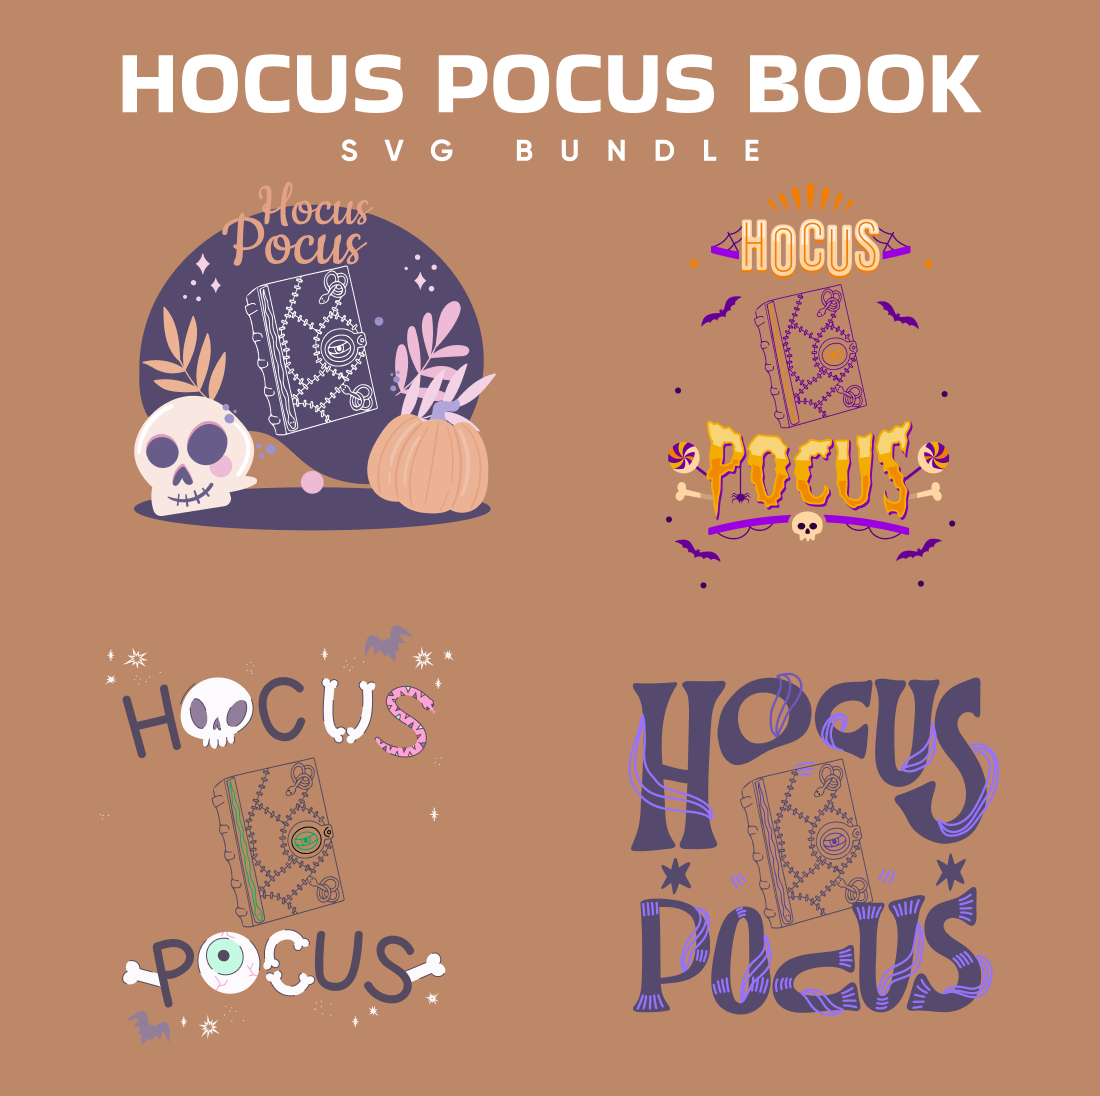 Hocus Pocus Book SVG.